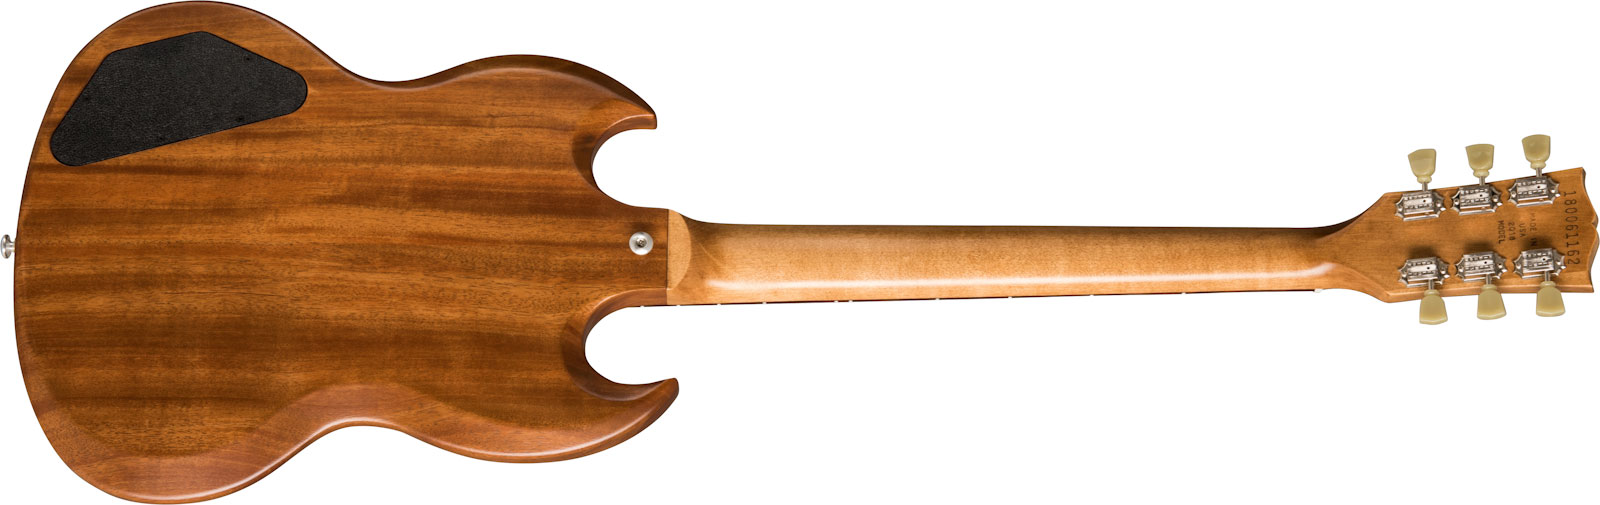 Gibson Sg Tribute Lh Modern Gaucher 2h Ht Rw - Natural Walnut - Linkshandige elektrische gitaar - Variation 1